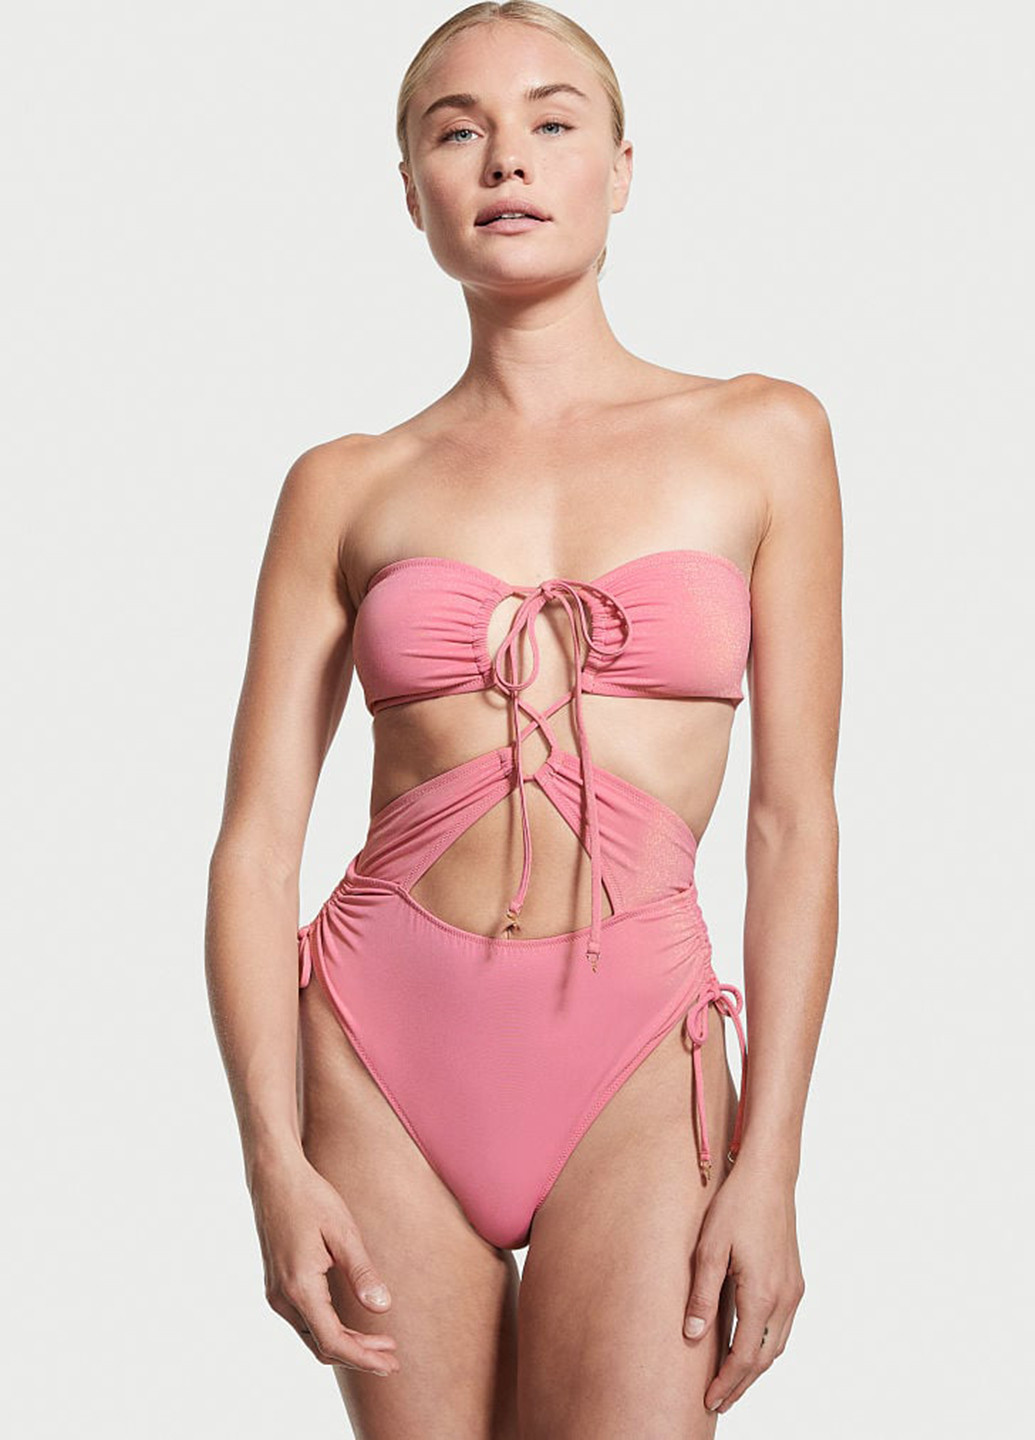 Рожевий літній купальник монокіні, суцільний Victoria's Secret